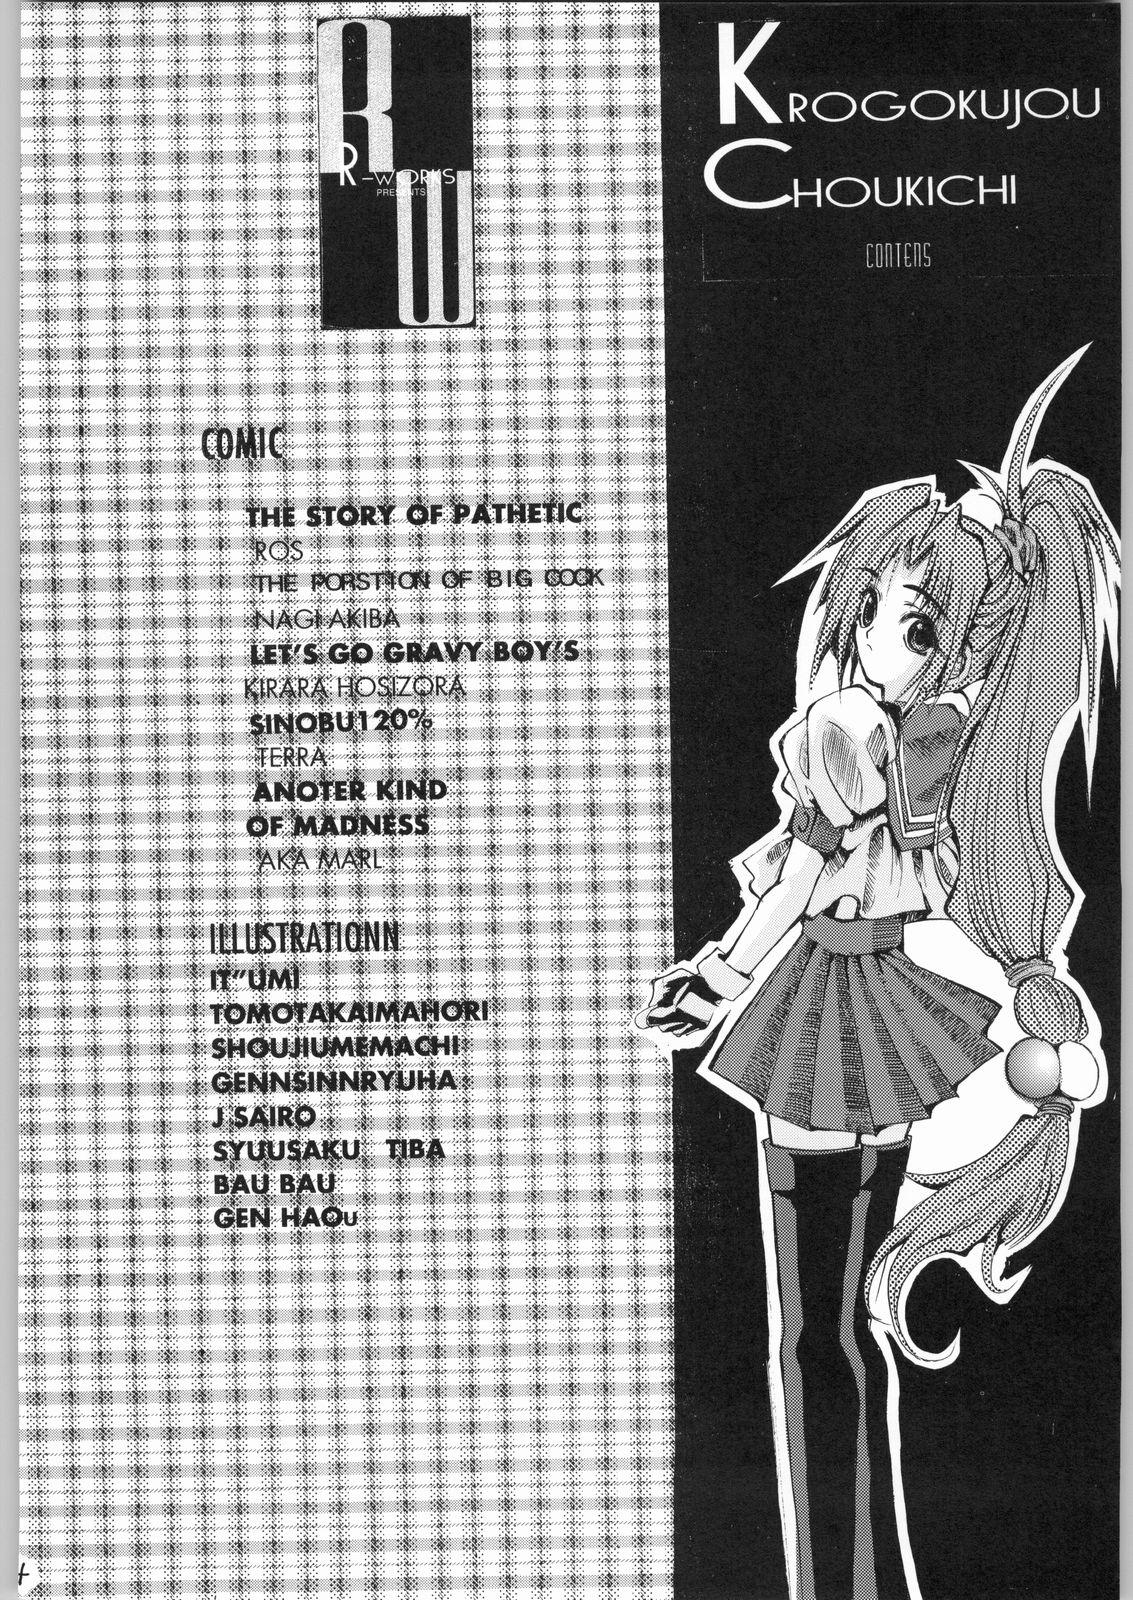 Nurumassage Kuro Gokujou Choukichi - Asuka 120 Whore - Page 3